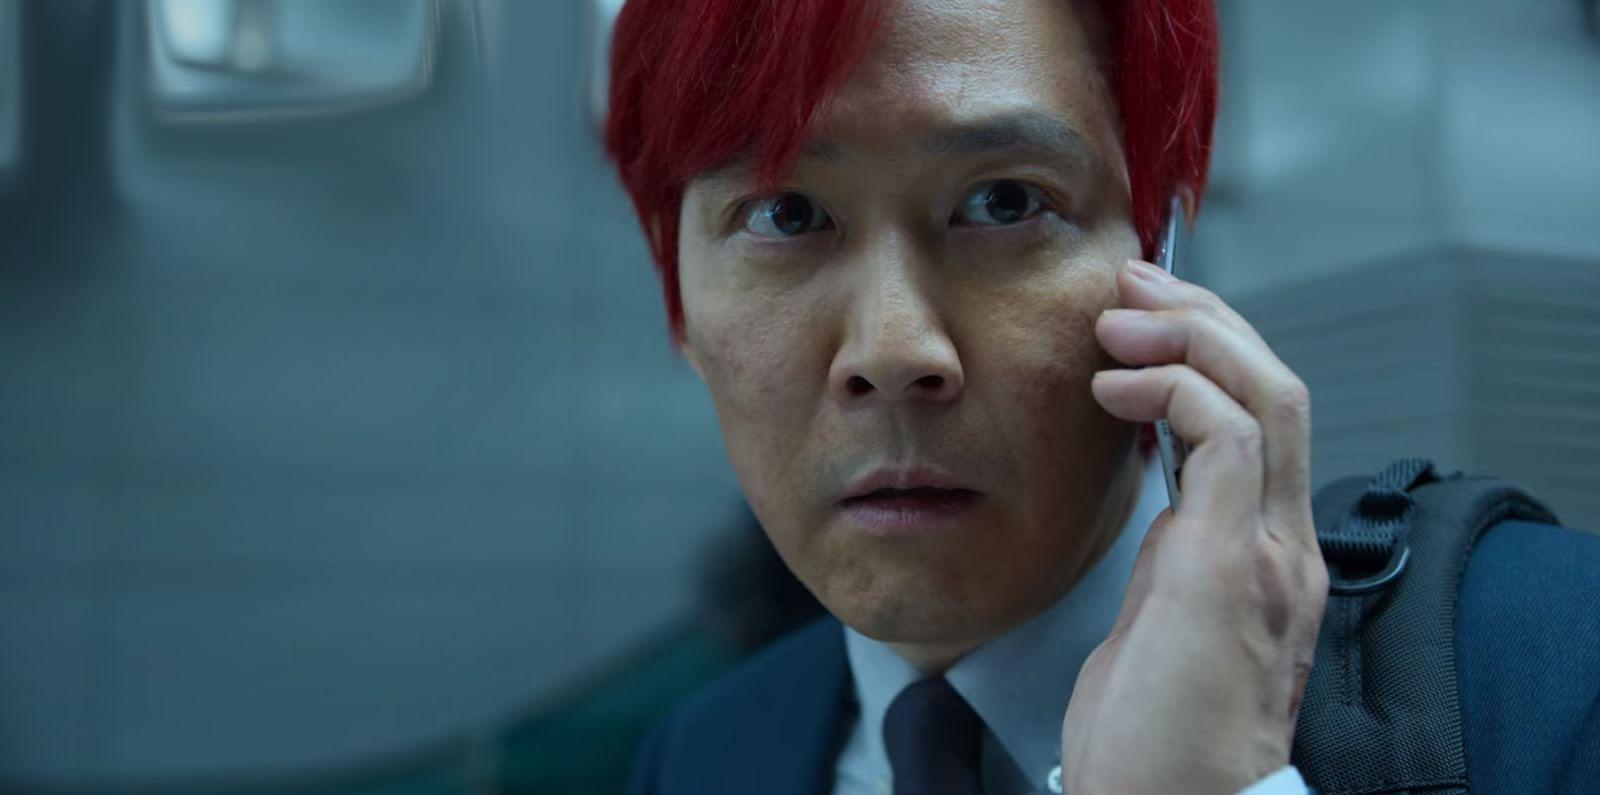 Mái tóc đỏ rực của nam chính Ki Hoon khiến khán giả không khỏi tò mò